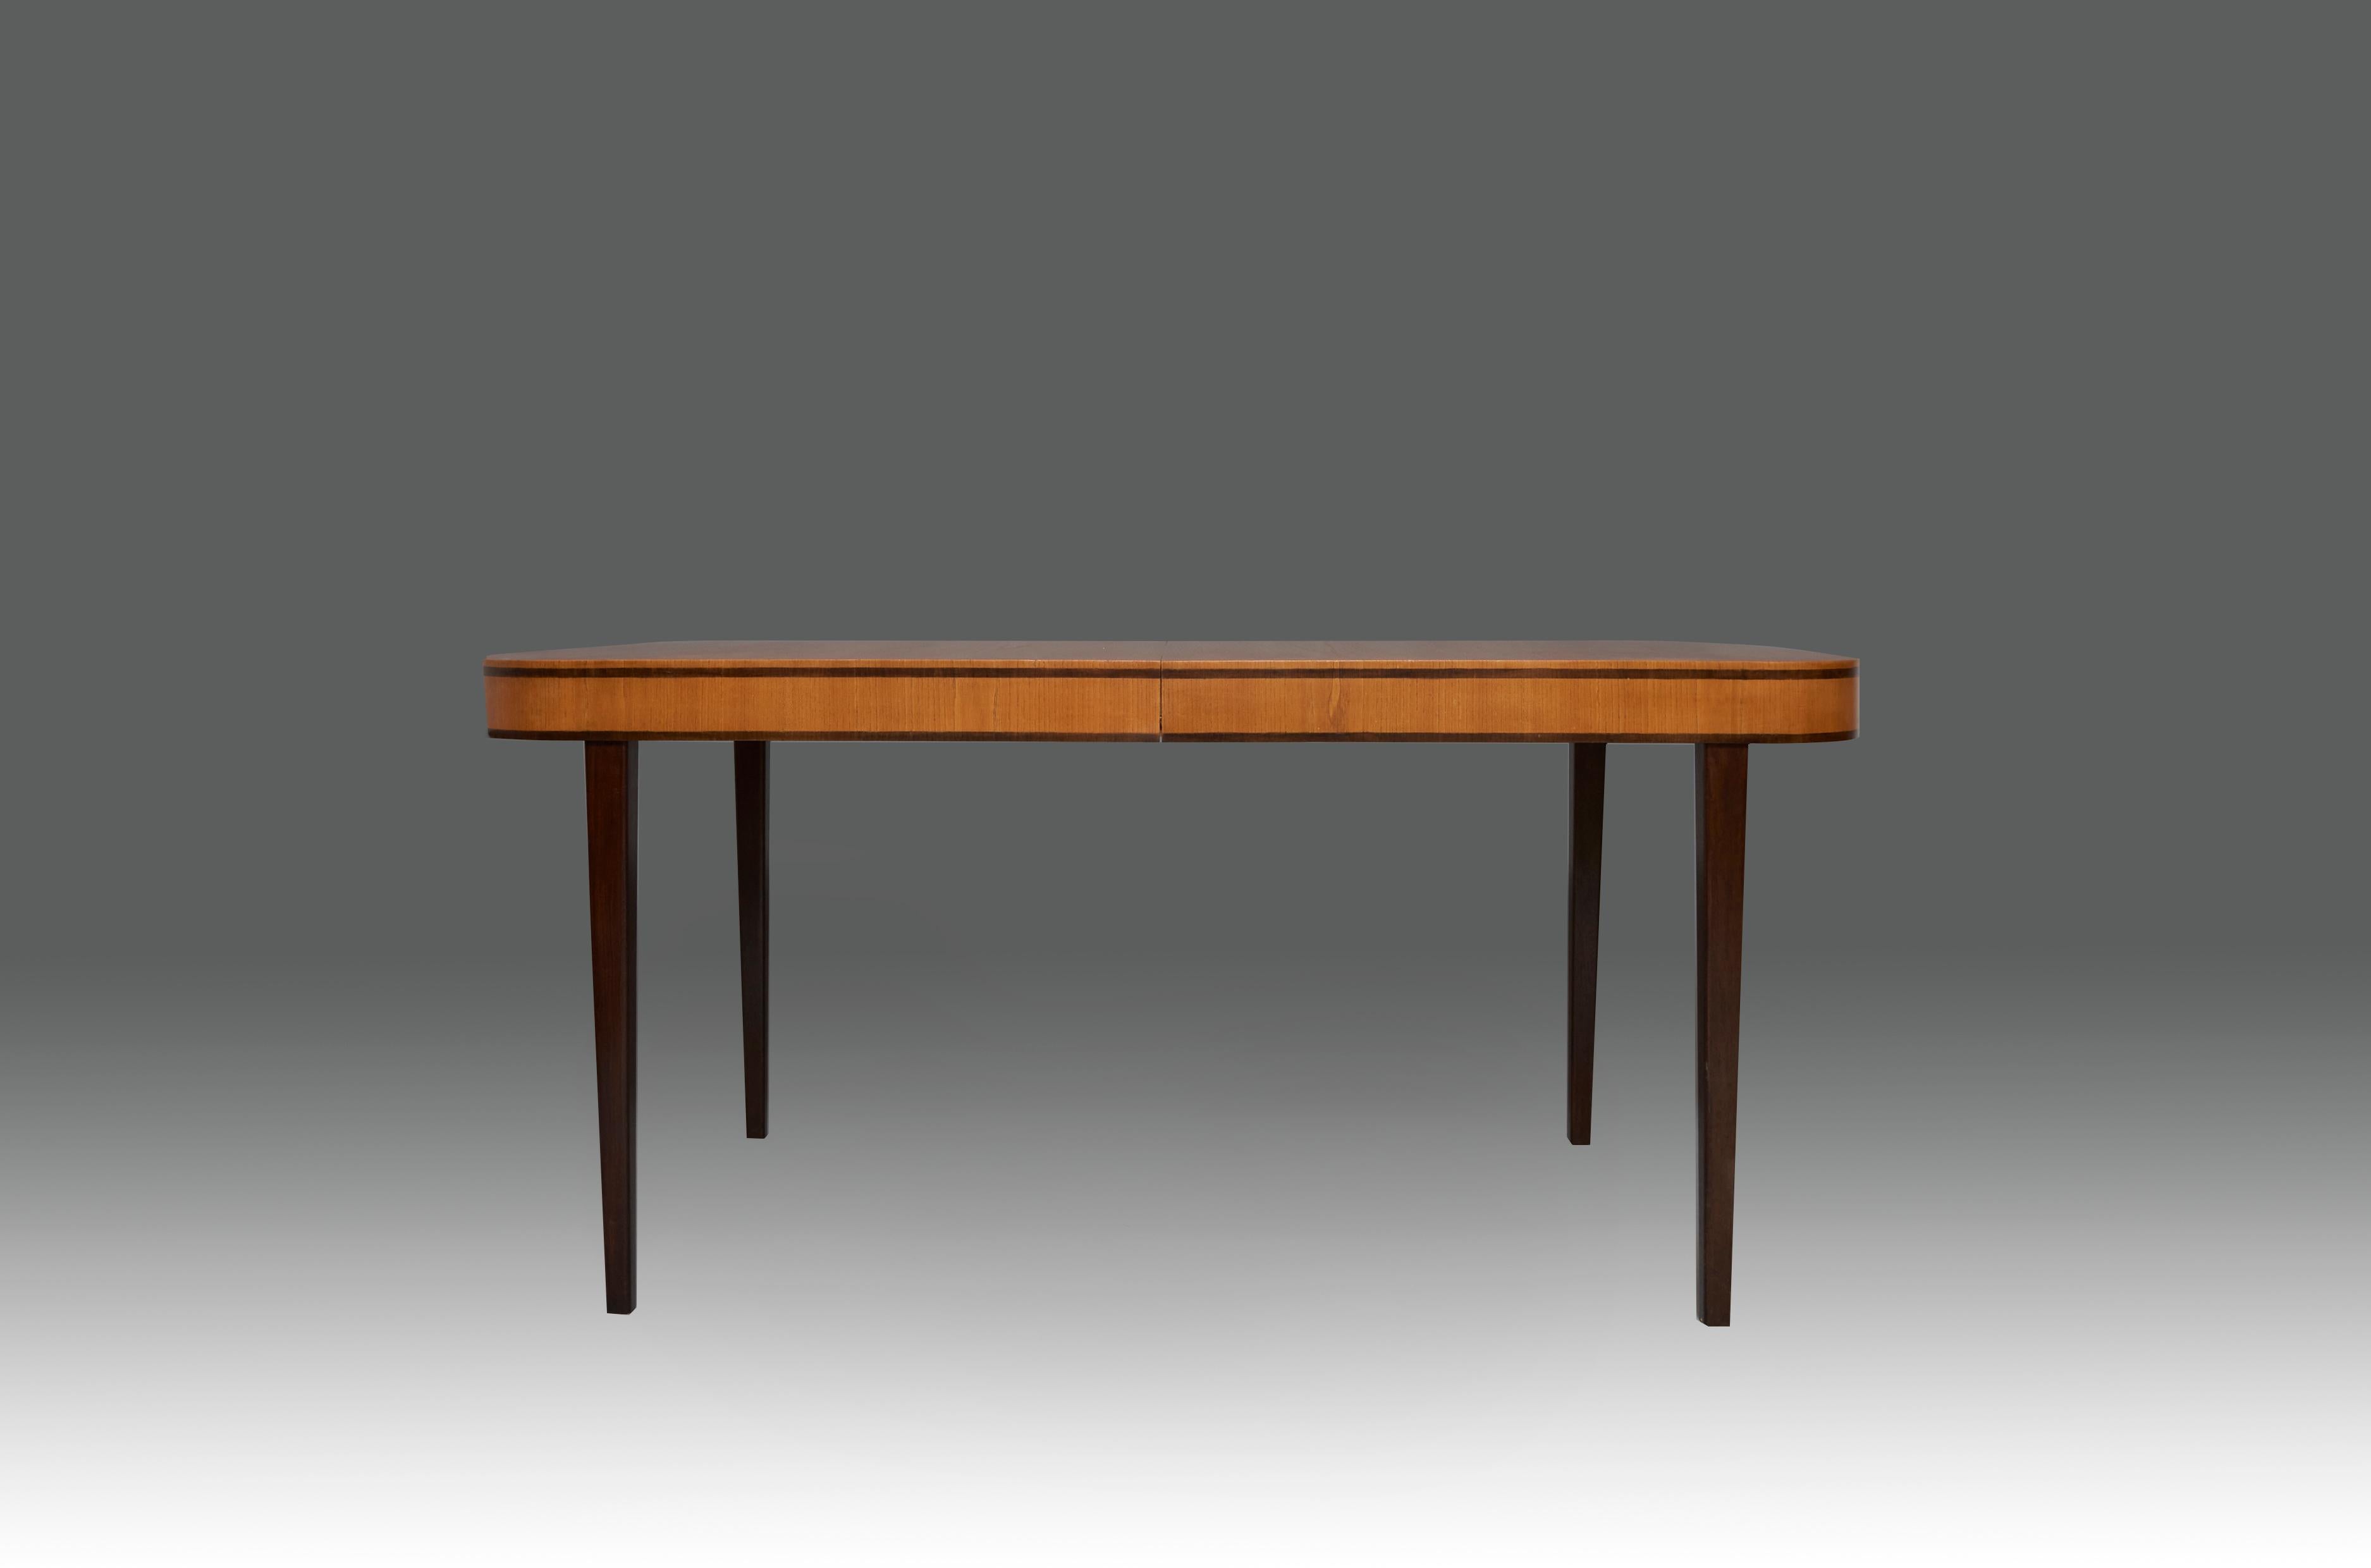 Table de salle à manger à rallonge conçue par Axel Einar Hjorth en bois d'orme et détails en bois d'orme teinté, avec deux rallonges en bouleau. Produit en 1938 par Nordiska Kompaniet, étiqueté NK R 40001 - C8 9 38. Suède, fin des années